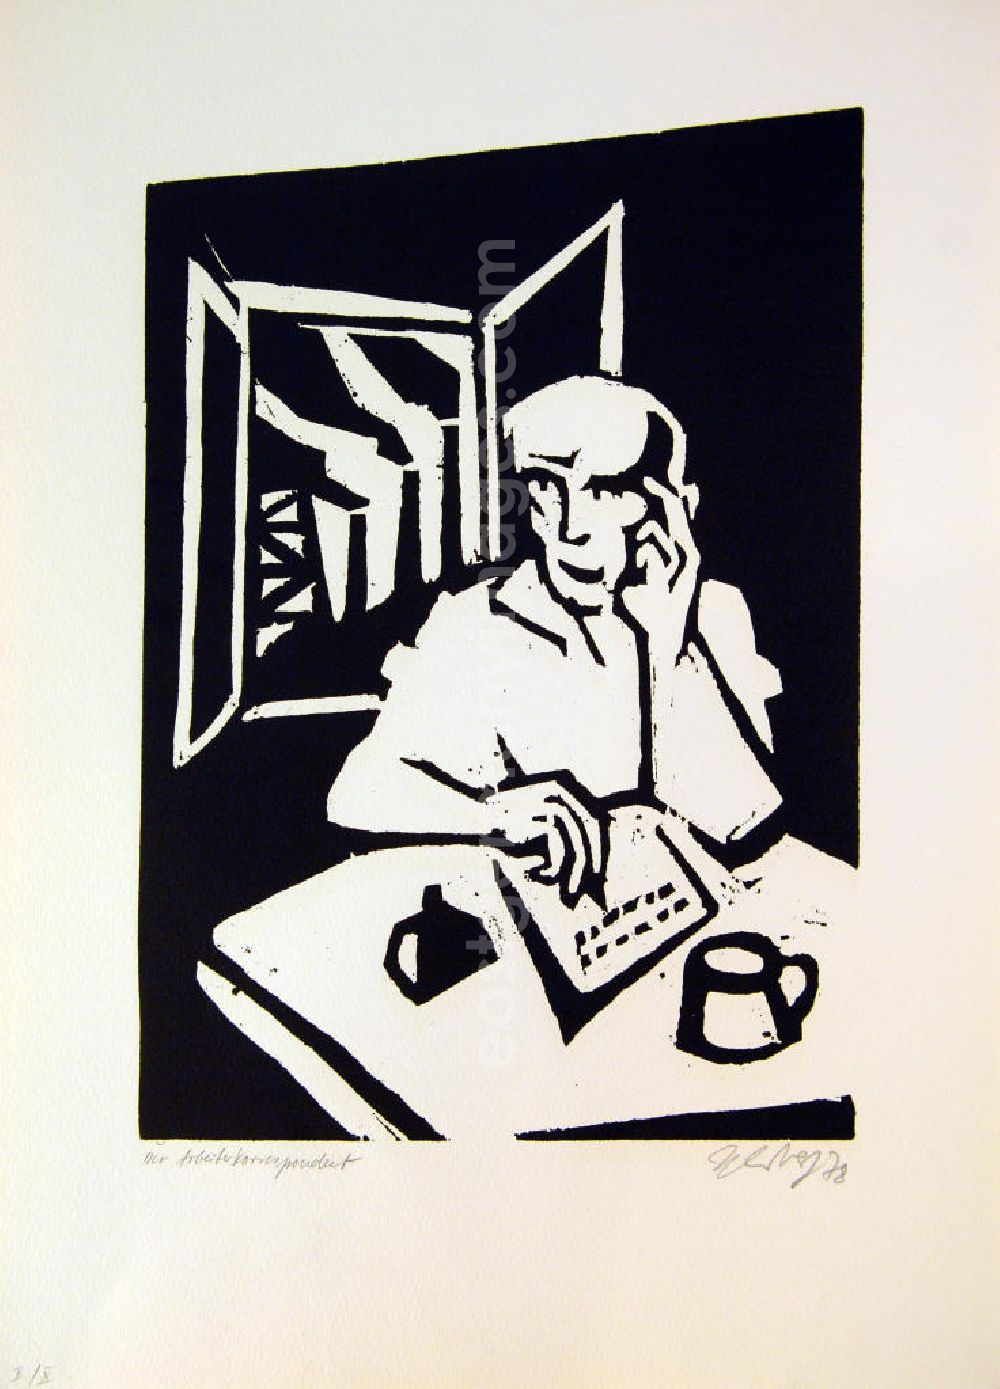 Berlin: Grafik von Herbert Sandberg Der Arbeiterkorrespondent aus dem Jahr 1978, 24,0x34,8cm Holzschnitt, handsigniert, 12/5